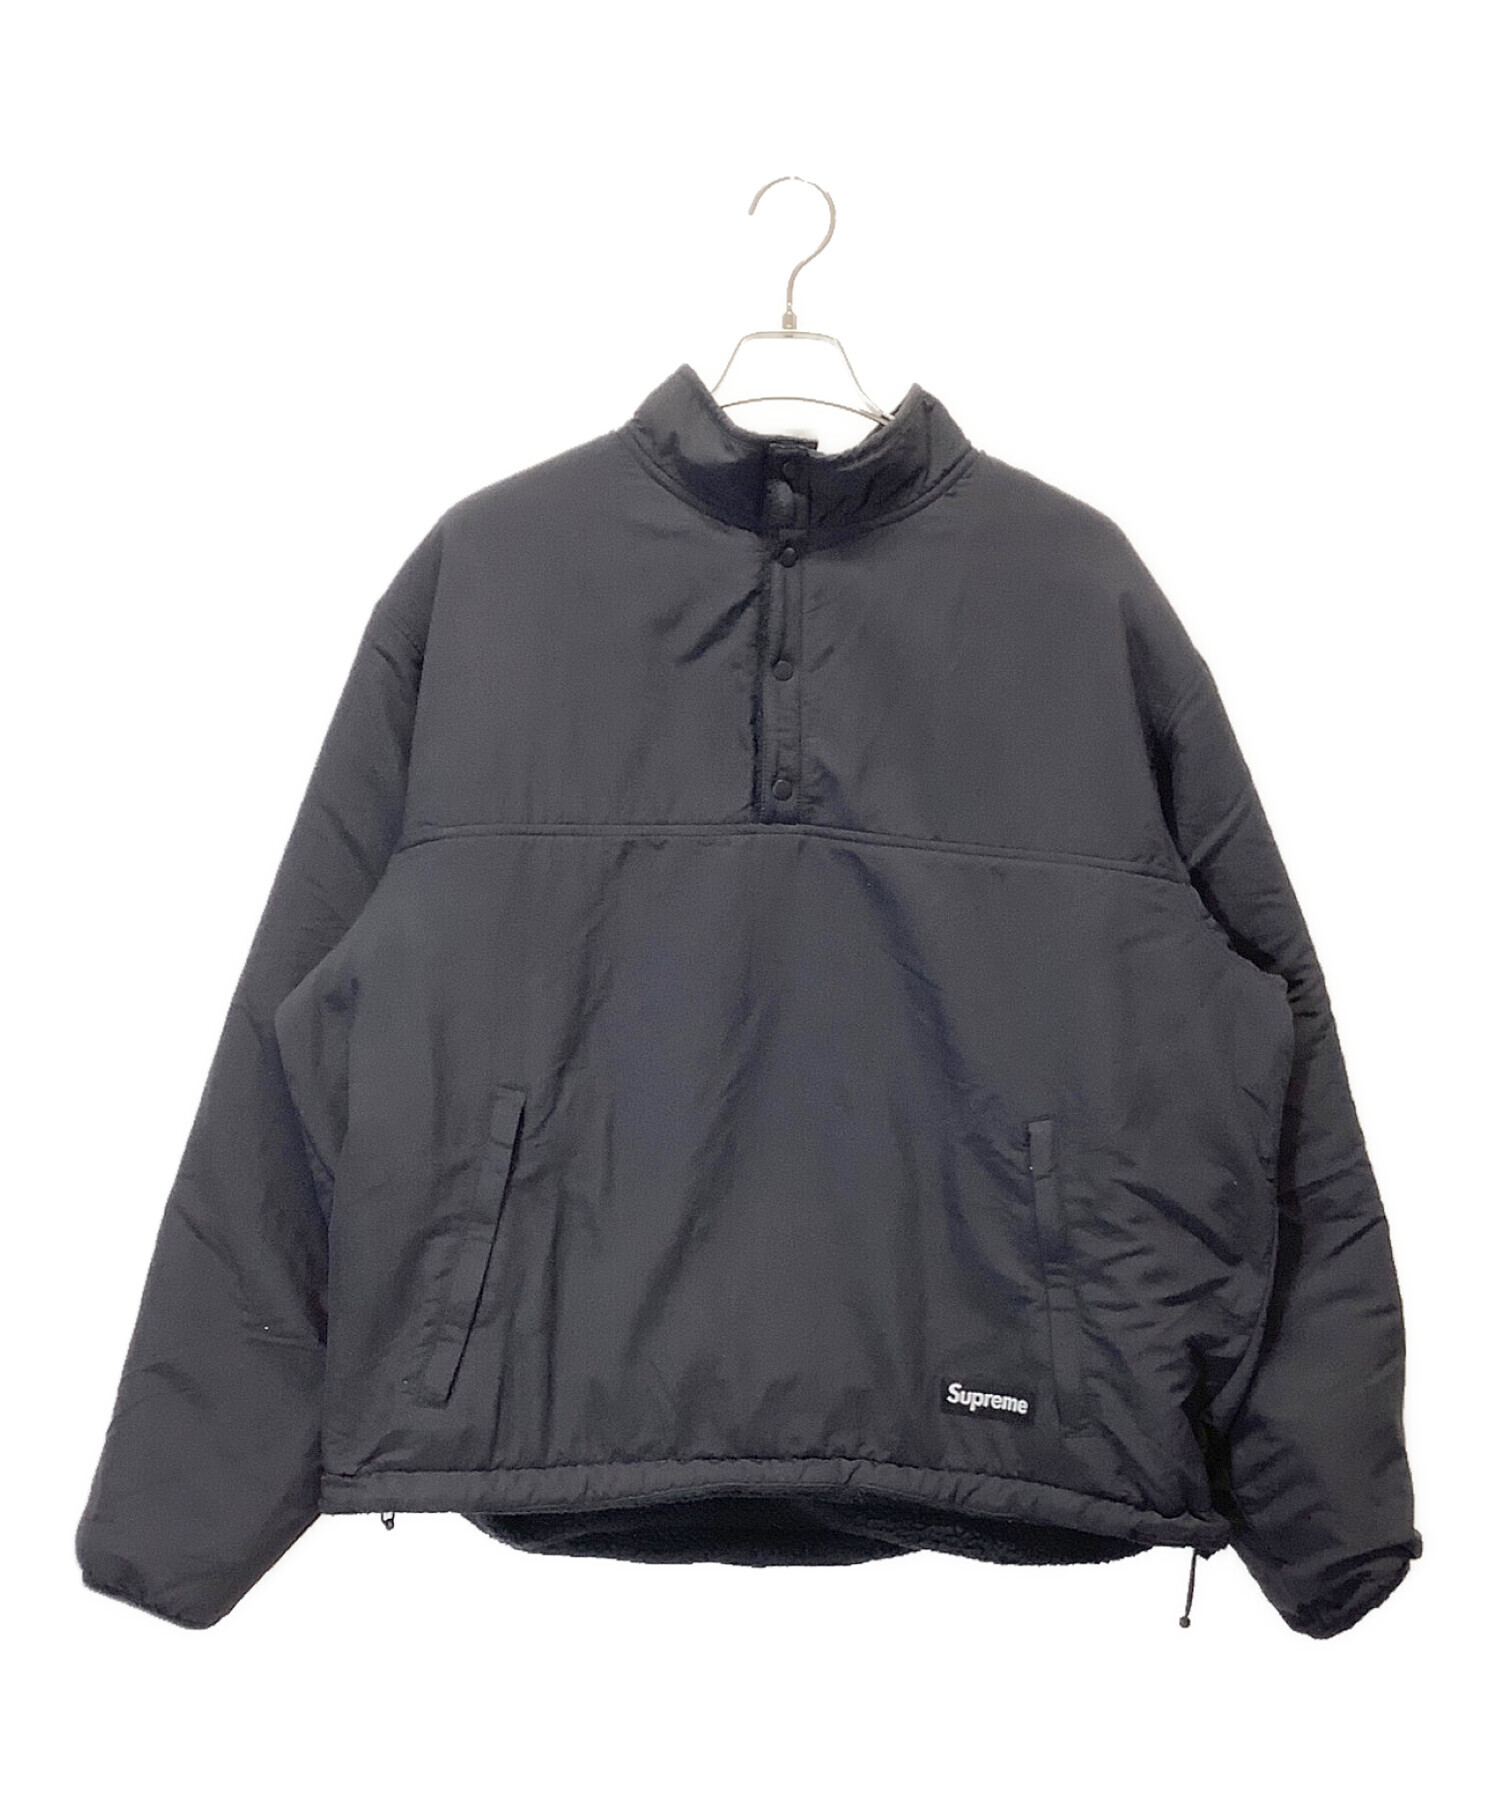 SUPREME (シュプリーム) ポーラテック リバーシブルジャケット ブラック サイズ:L